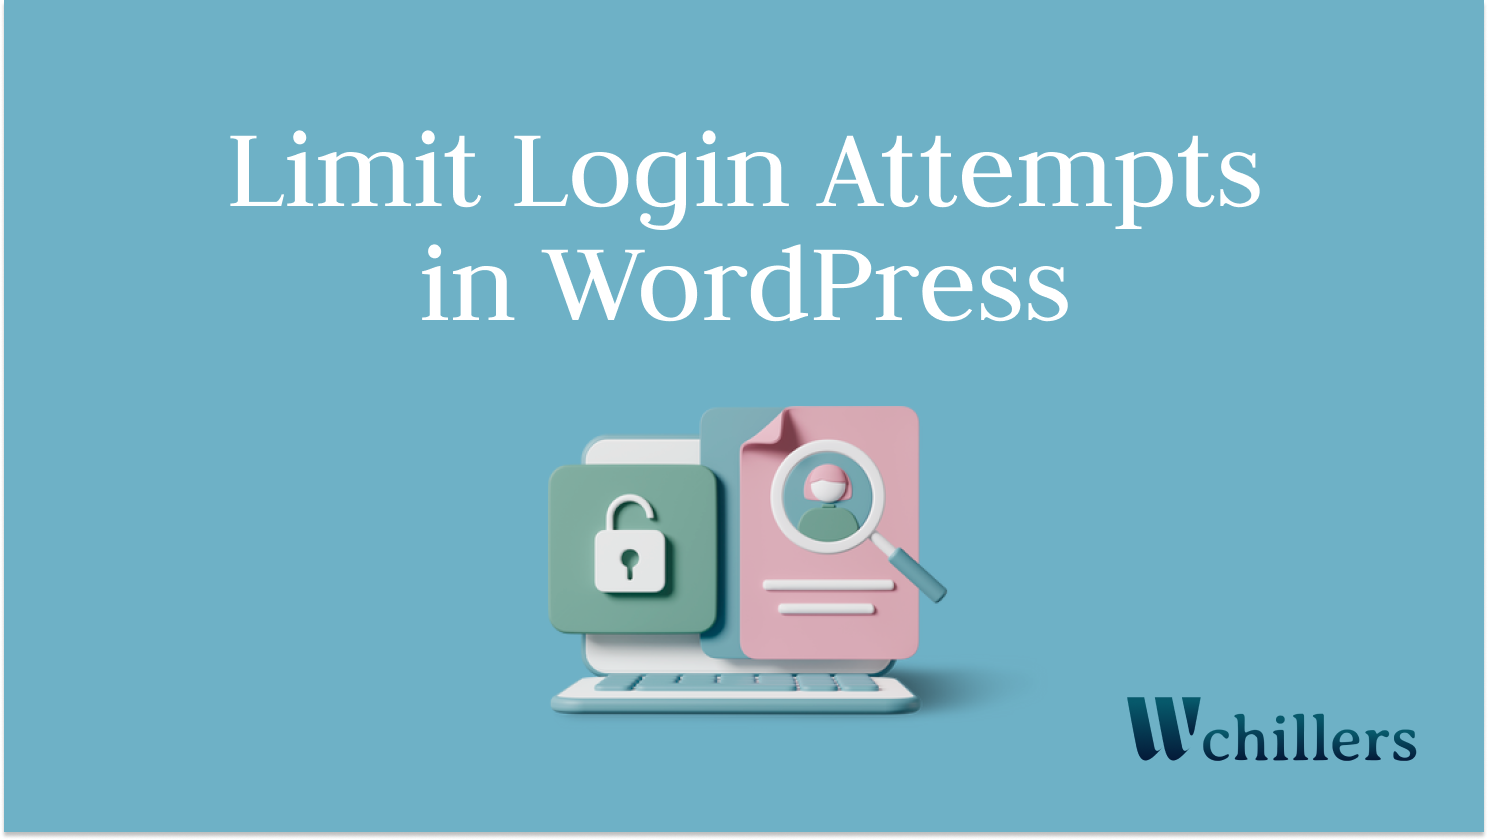 Limit login attempts on WordPress site